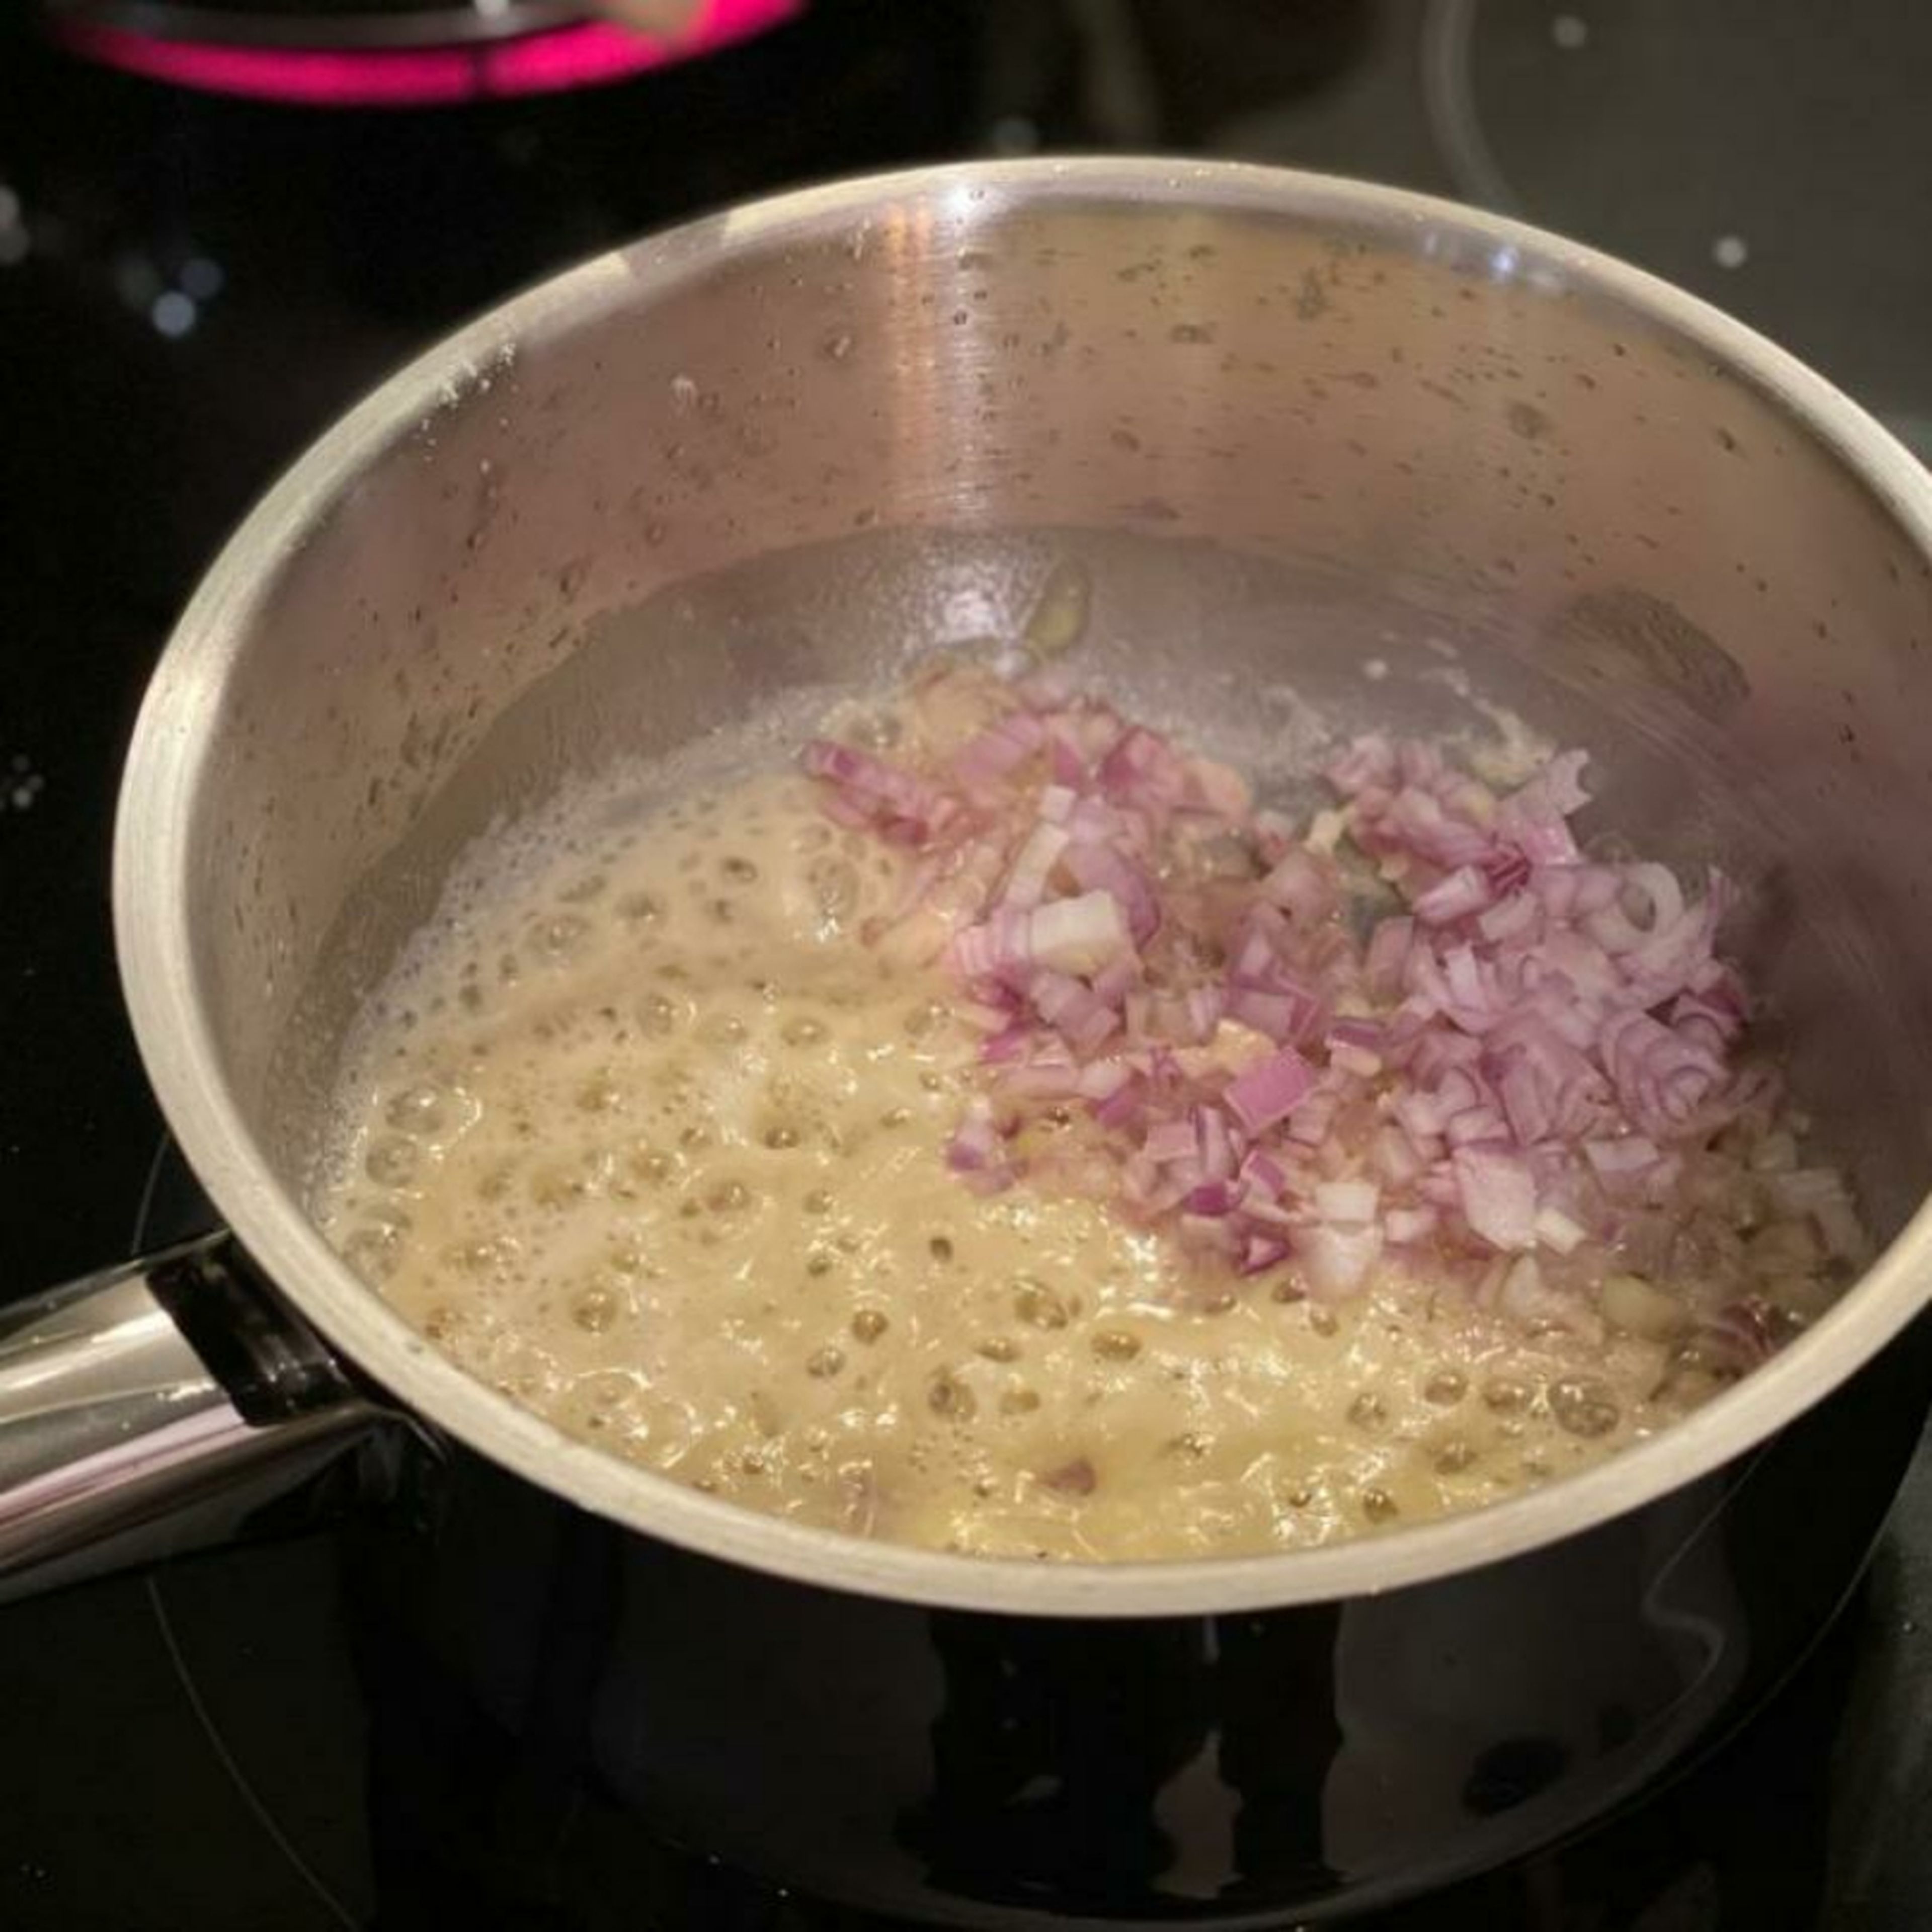 Die Butter in einem Topf schmelzen. Mehl dazugeben und kräftig rühren damit es eine gleichmäßige Mehlschwitze ergibt. Die Zwiebeln und den Knoblauch dazugeben und ca. 3 Min. darin glasig schwitzen.